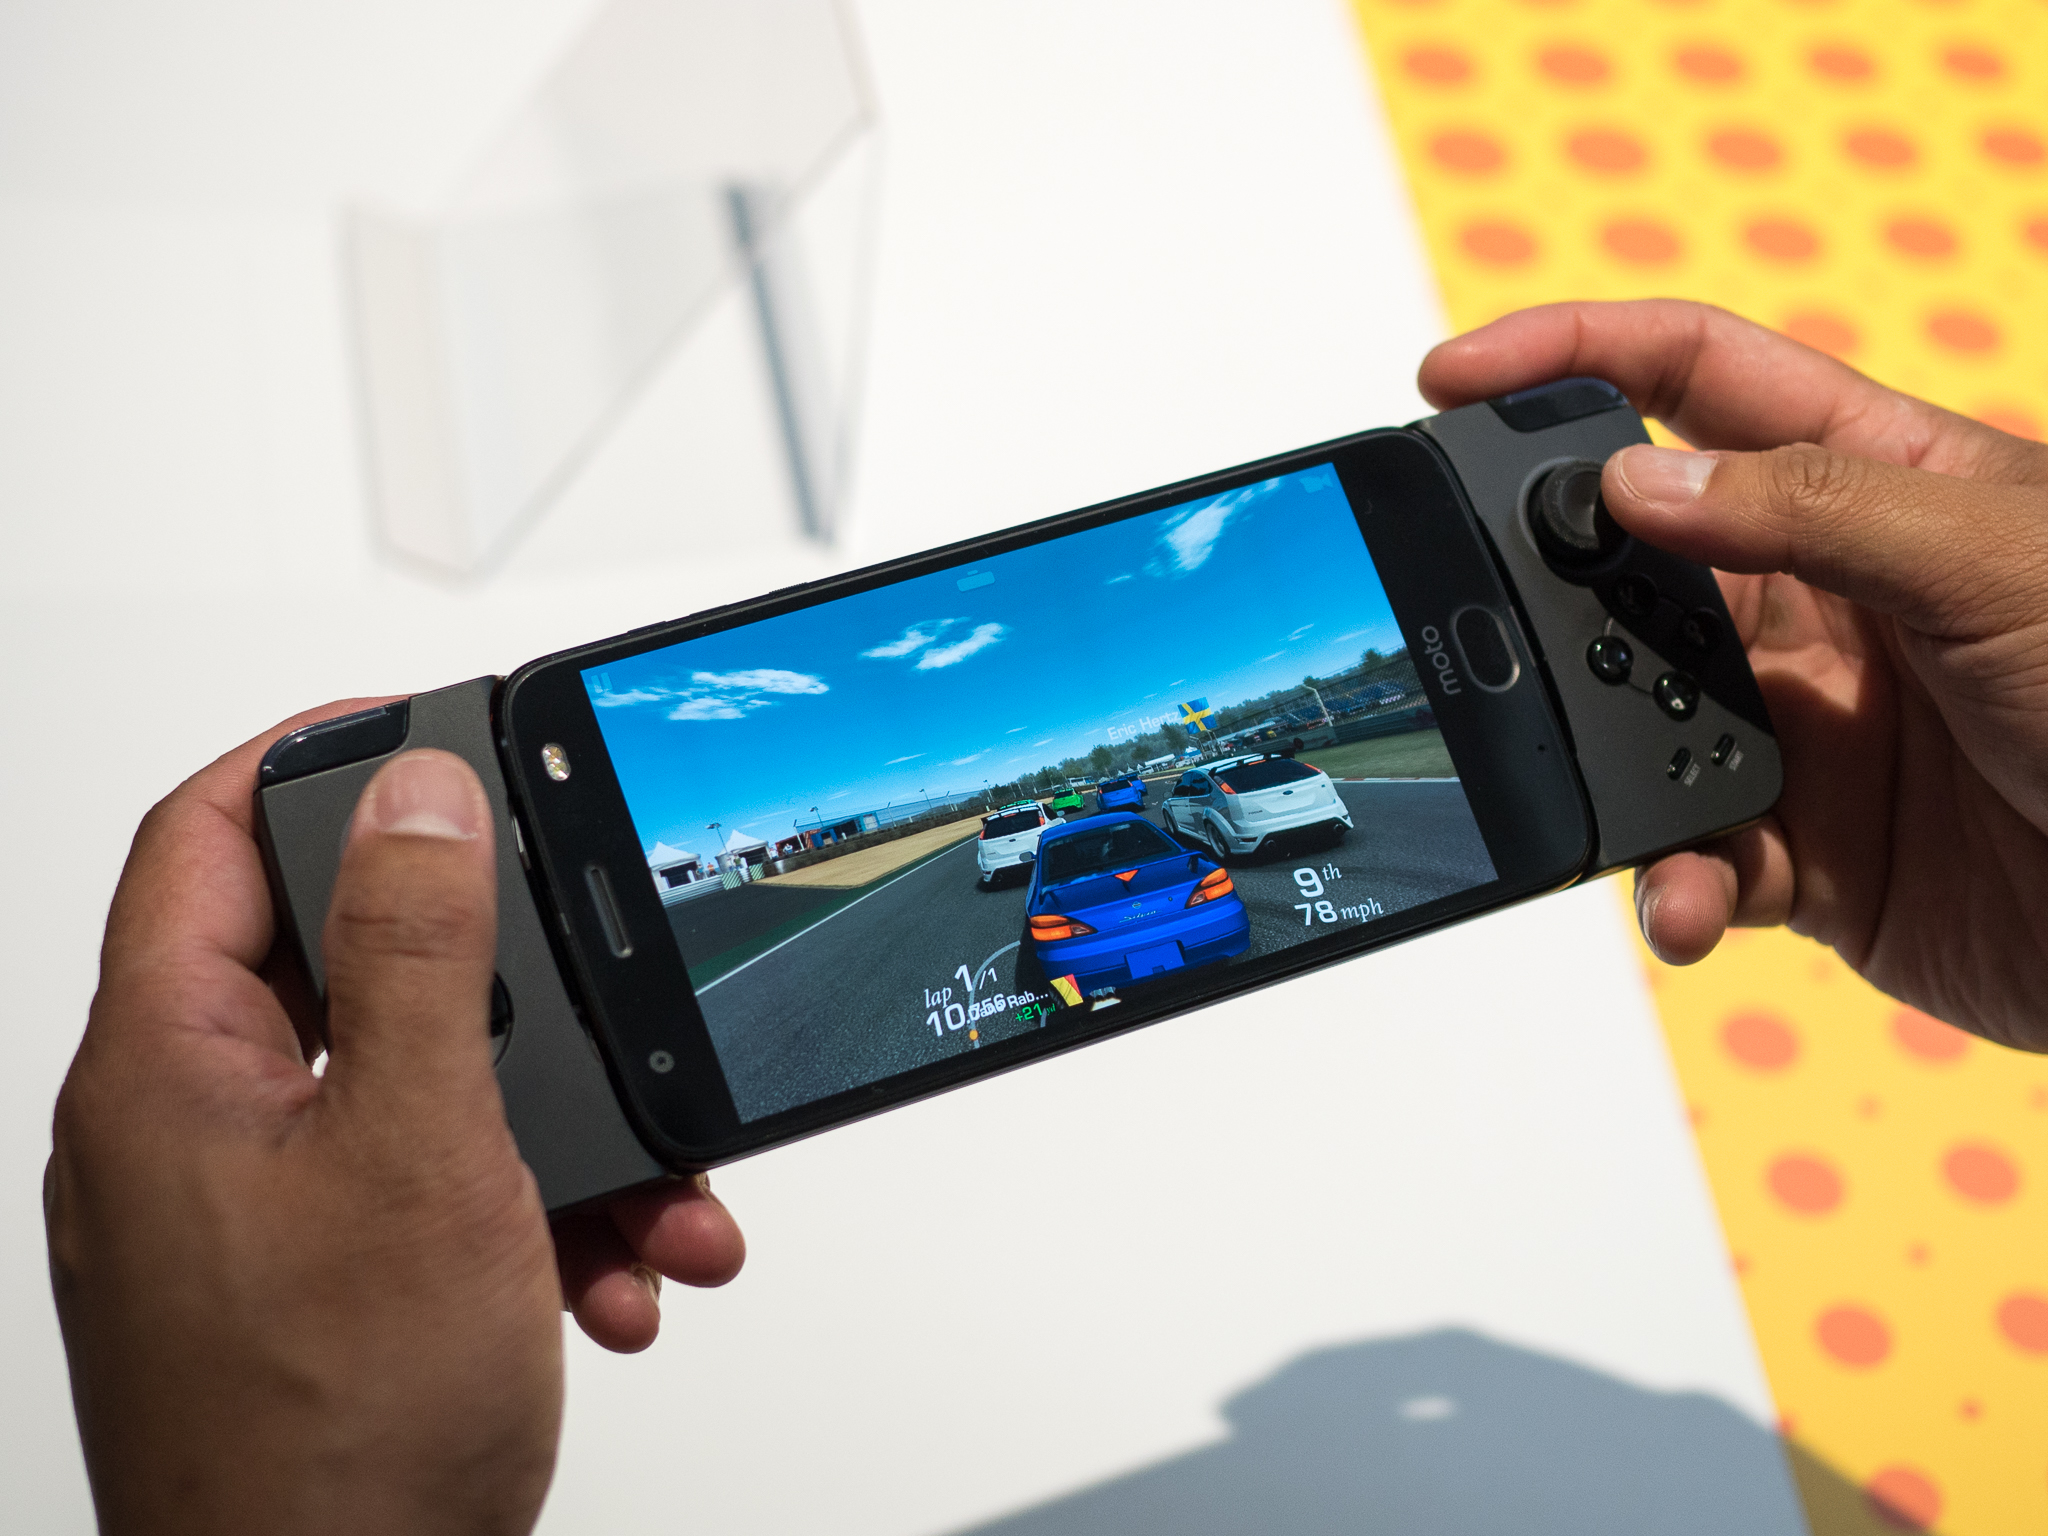 O novo “Snap Gamepad” da linha Moto Z chega ao Brasil em 5 de outubro por R$ 799